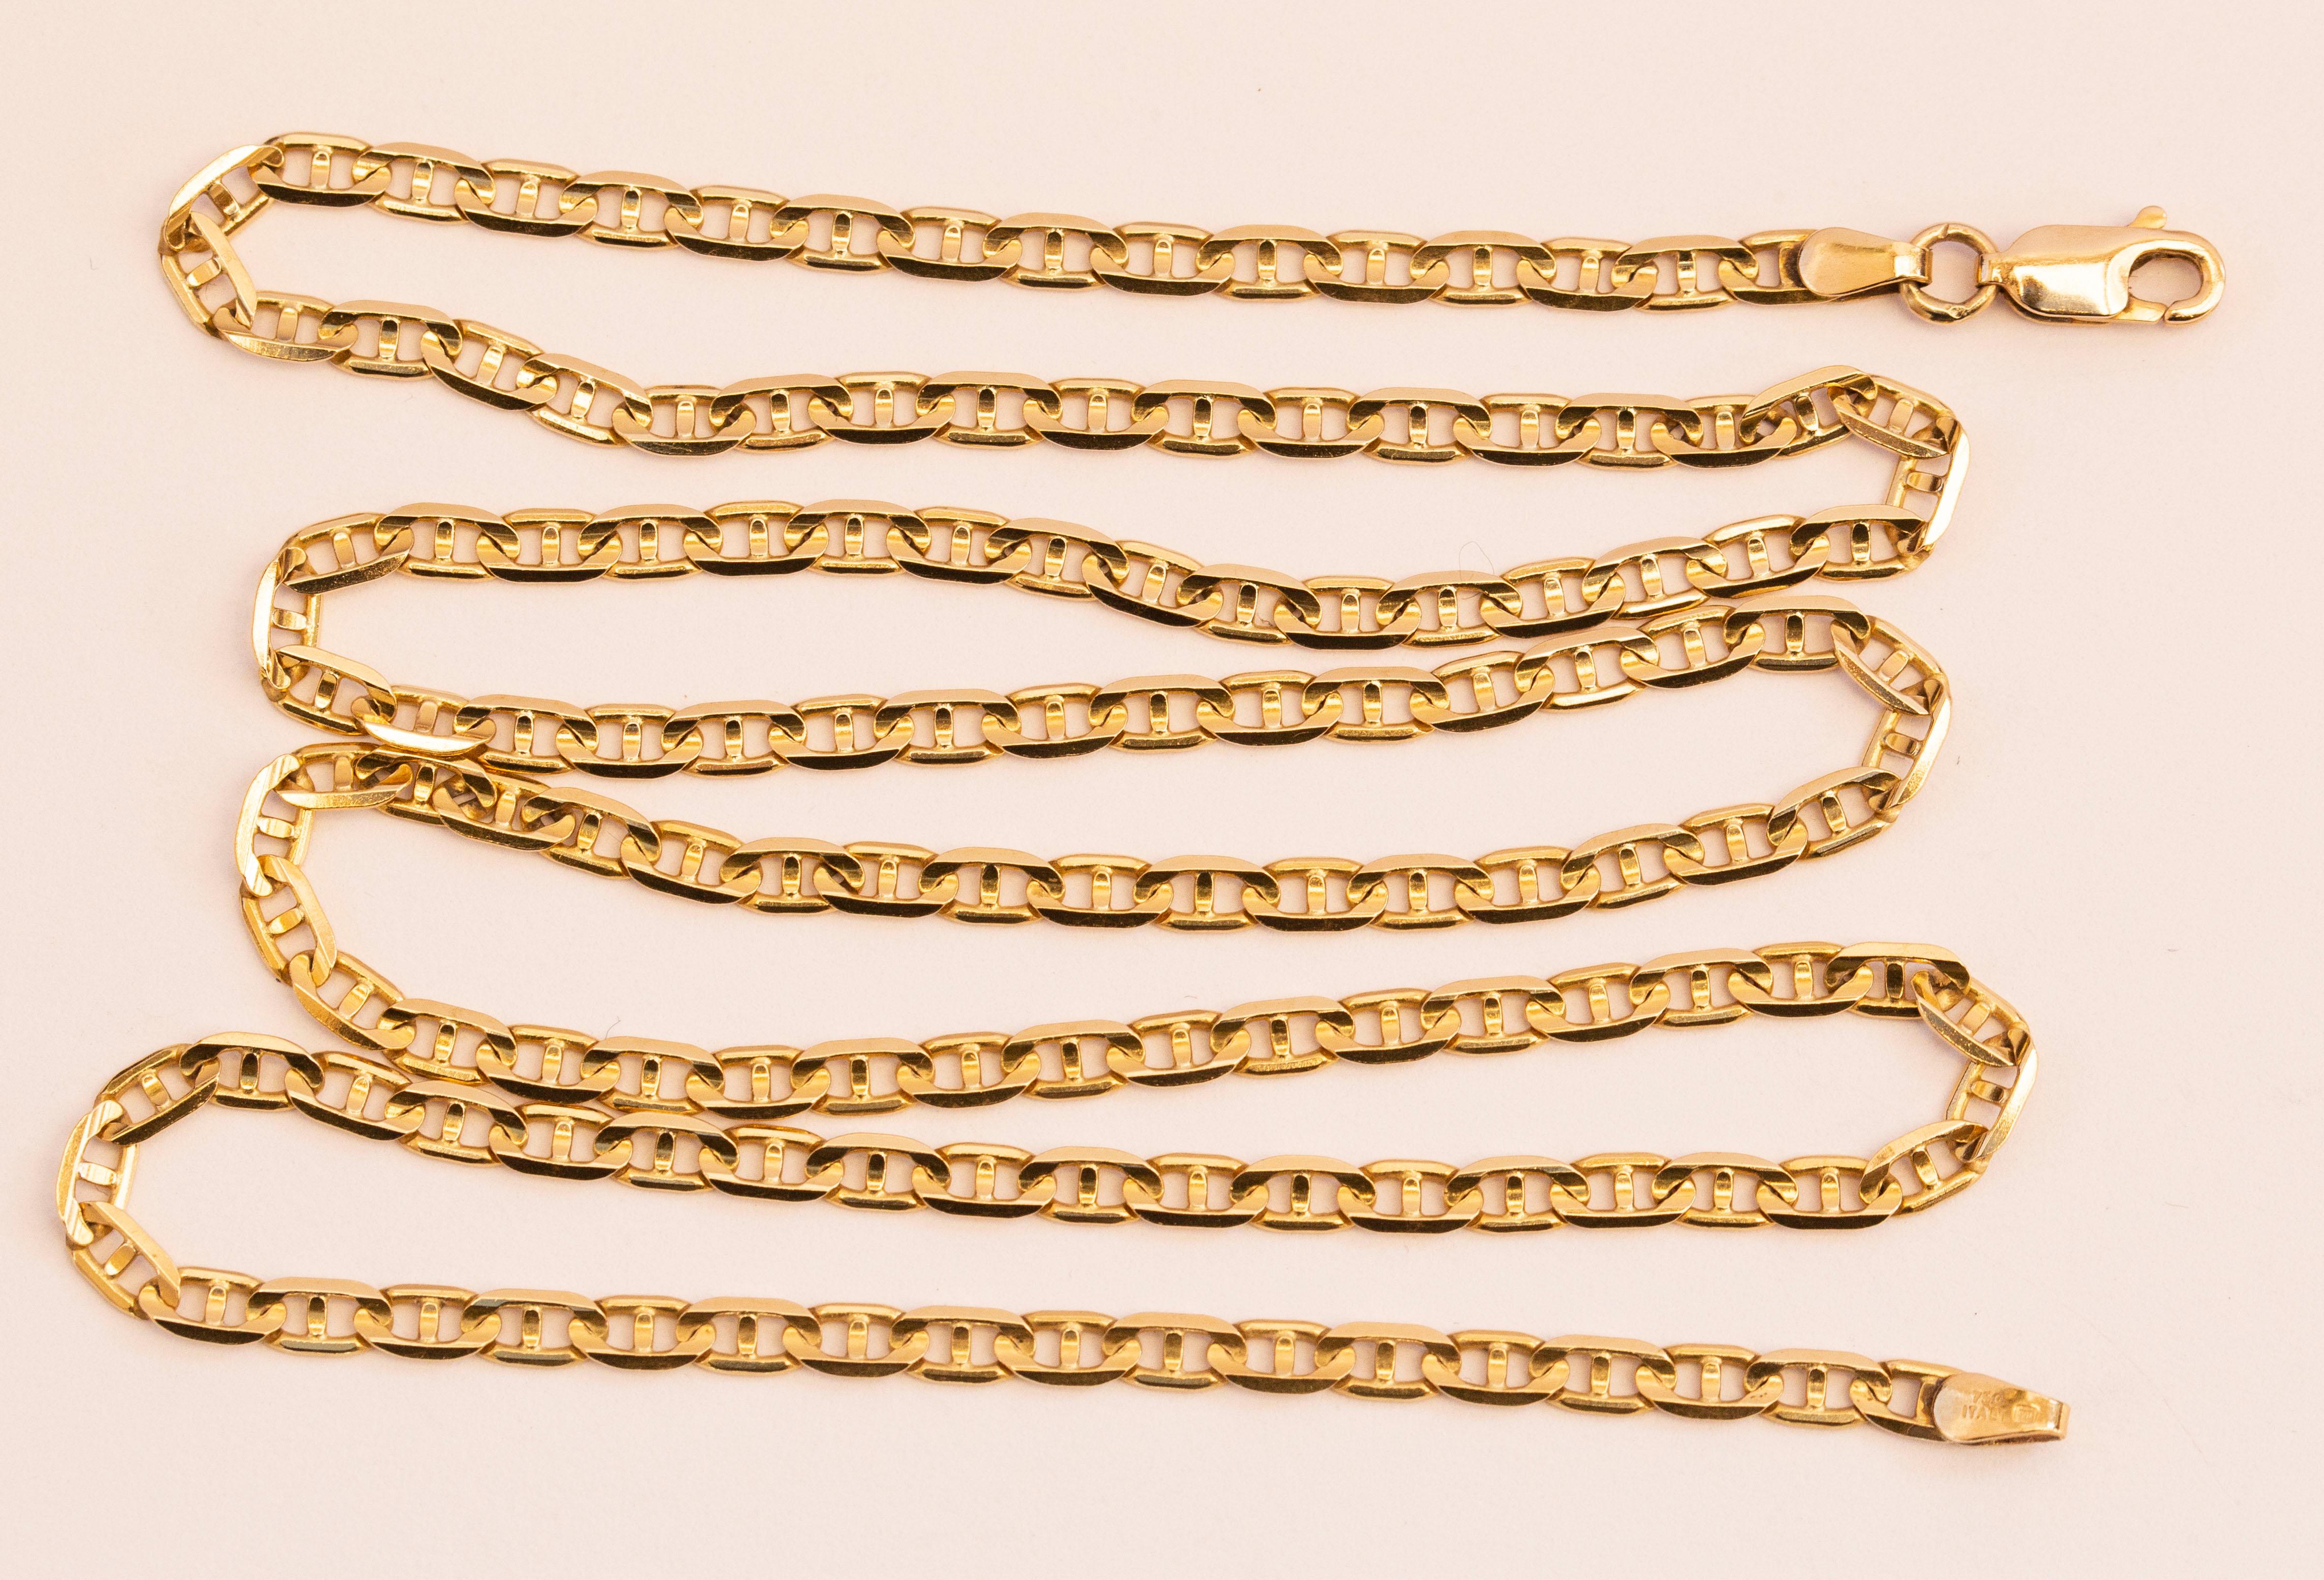 Collier italien vintage en chaîne à maillons en or jaune 18 carats (type marin plat/ancre). Le collier est magnifiquement réalisé et il complétera à merveille une tenue classique ou moderne. Le collier est estampillé 750 Italy, ce qui signifie